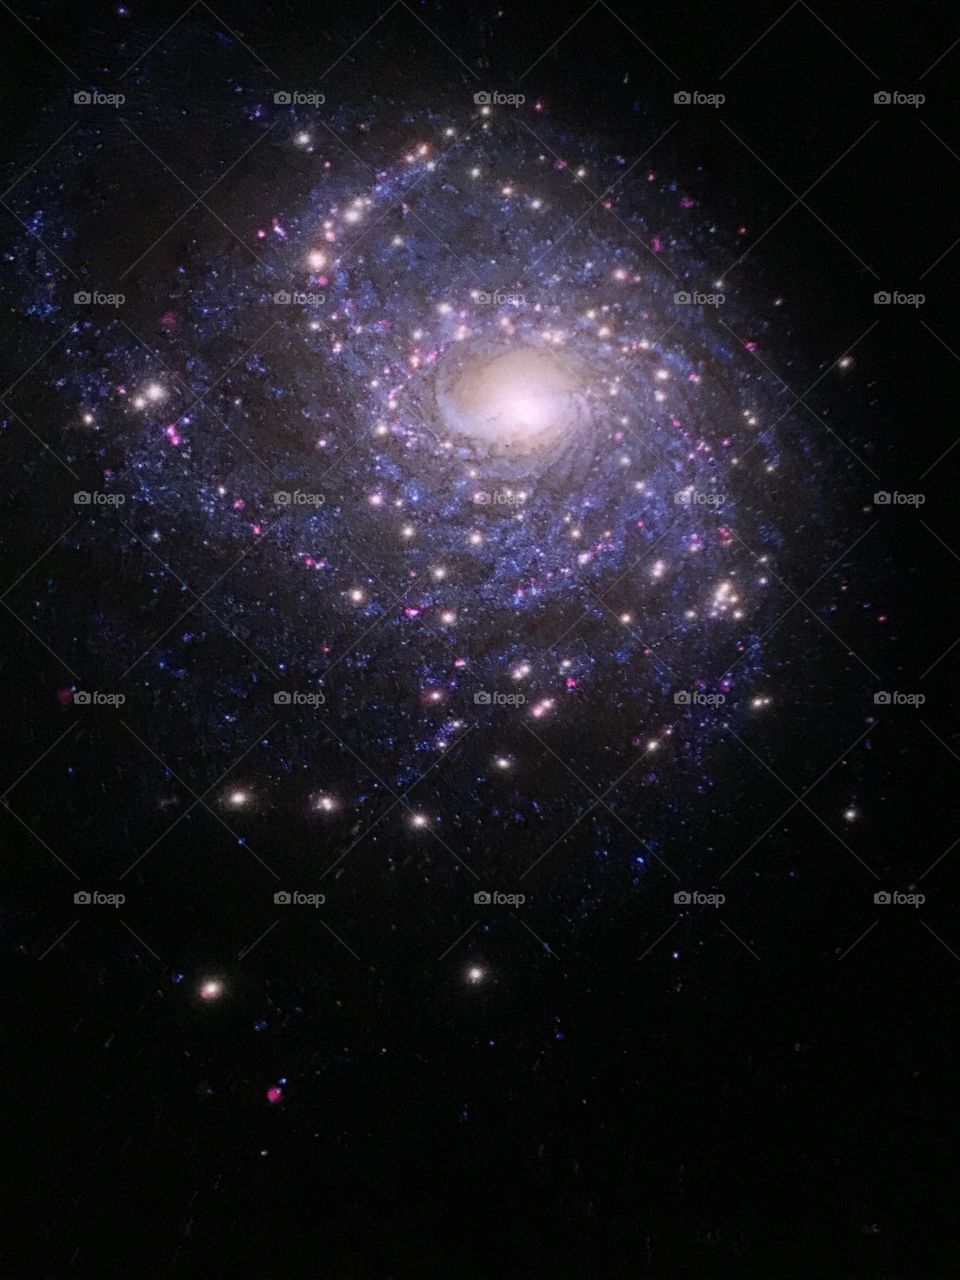 Milky Way galaxy as seen from Hayden Planetarium